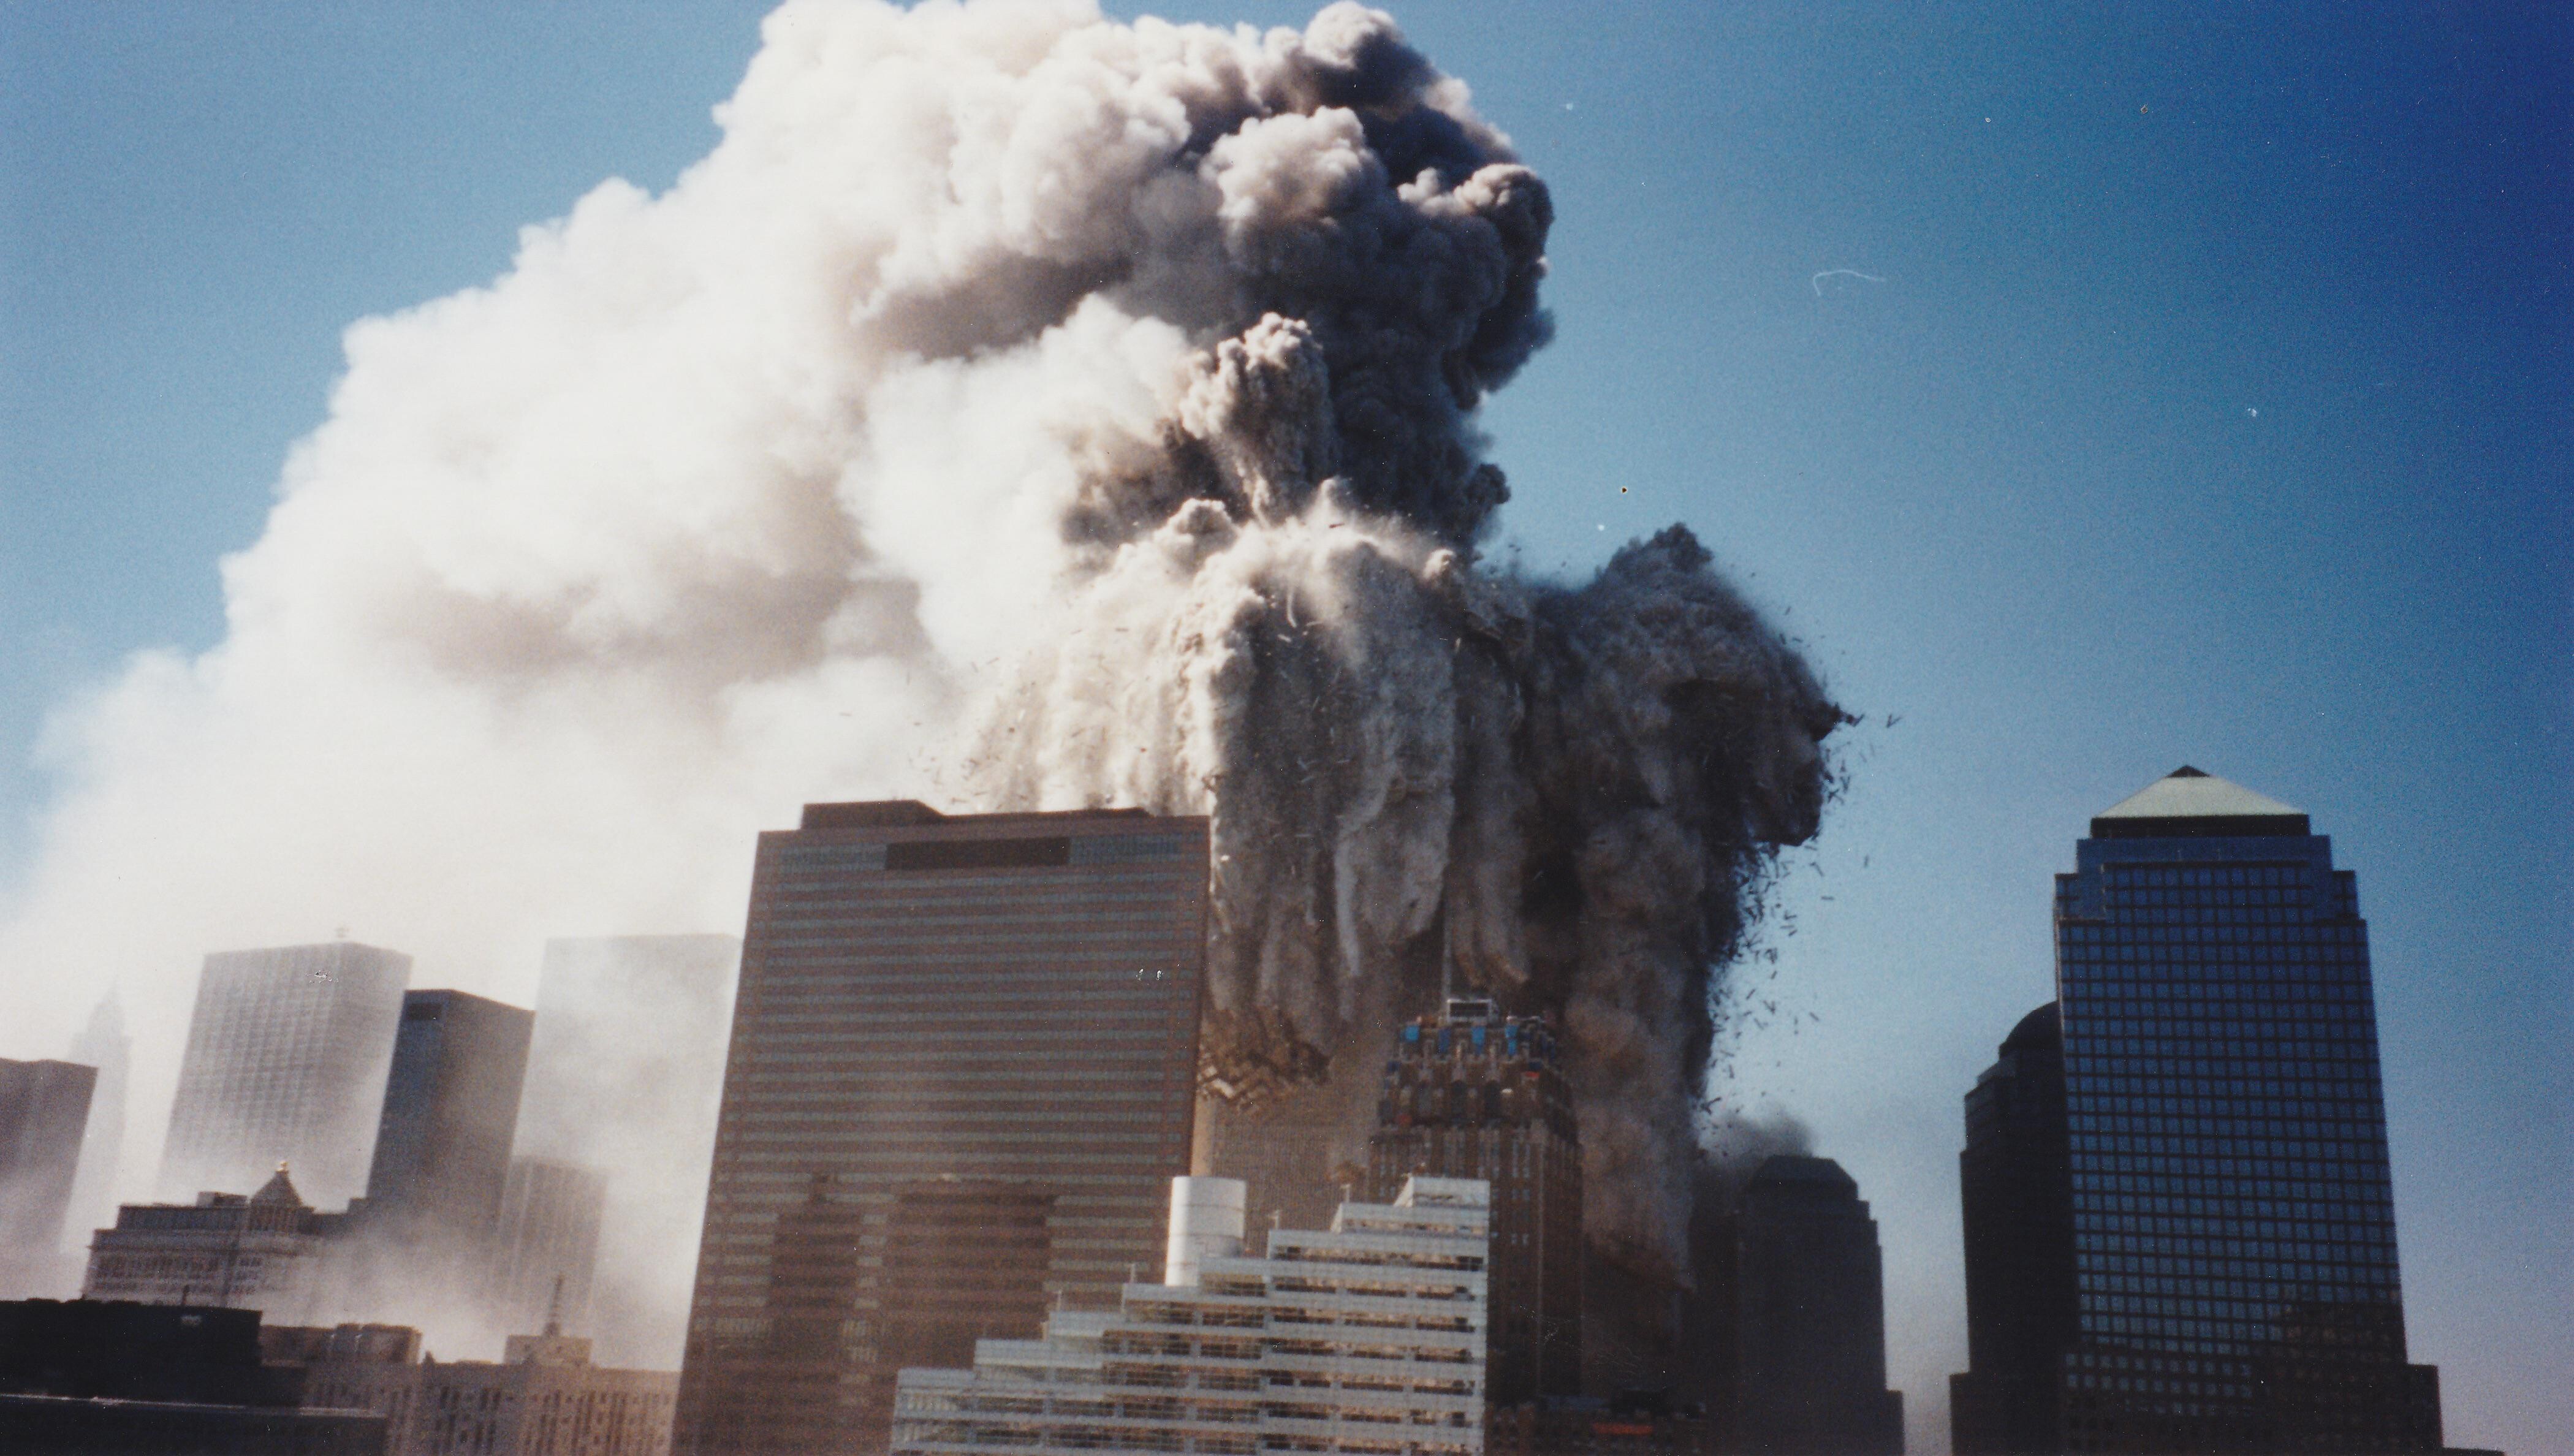 Ранее не публиковавшаяся фотография трагедии 11 сентября 2001 года из личного альбома. Автор hanfanson